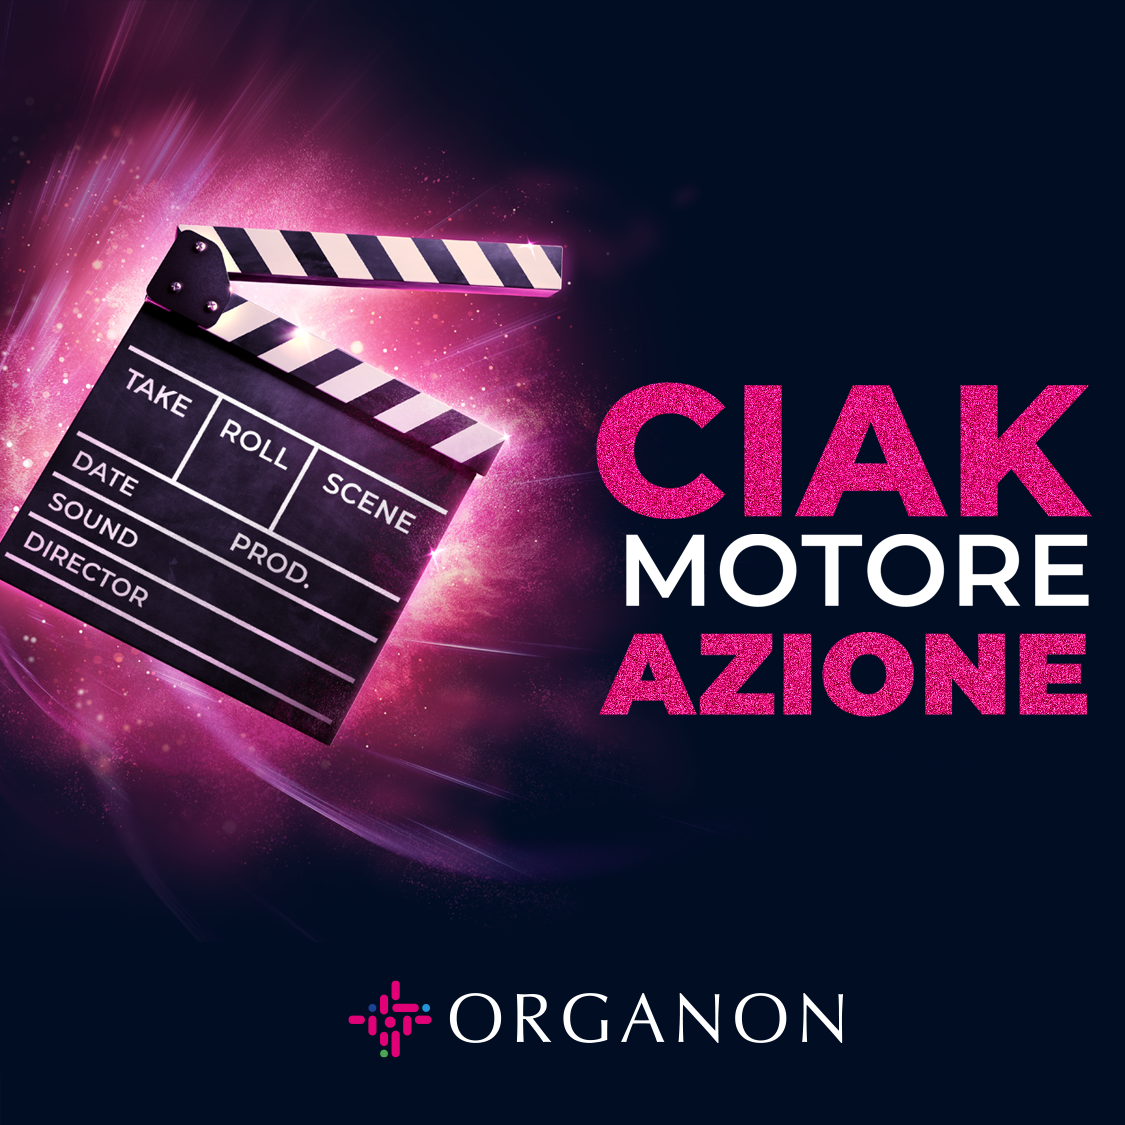 Organon CIAK MOTORE AZIONE cover